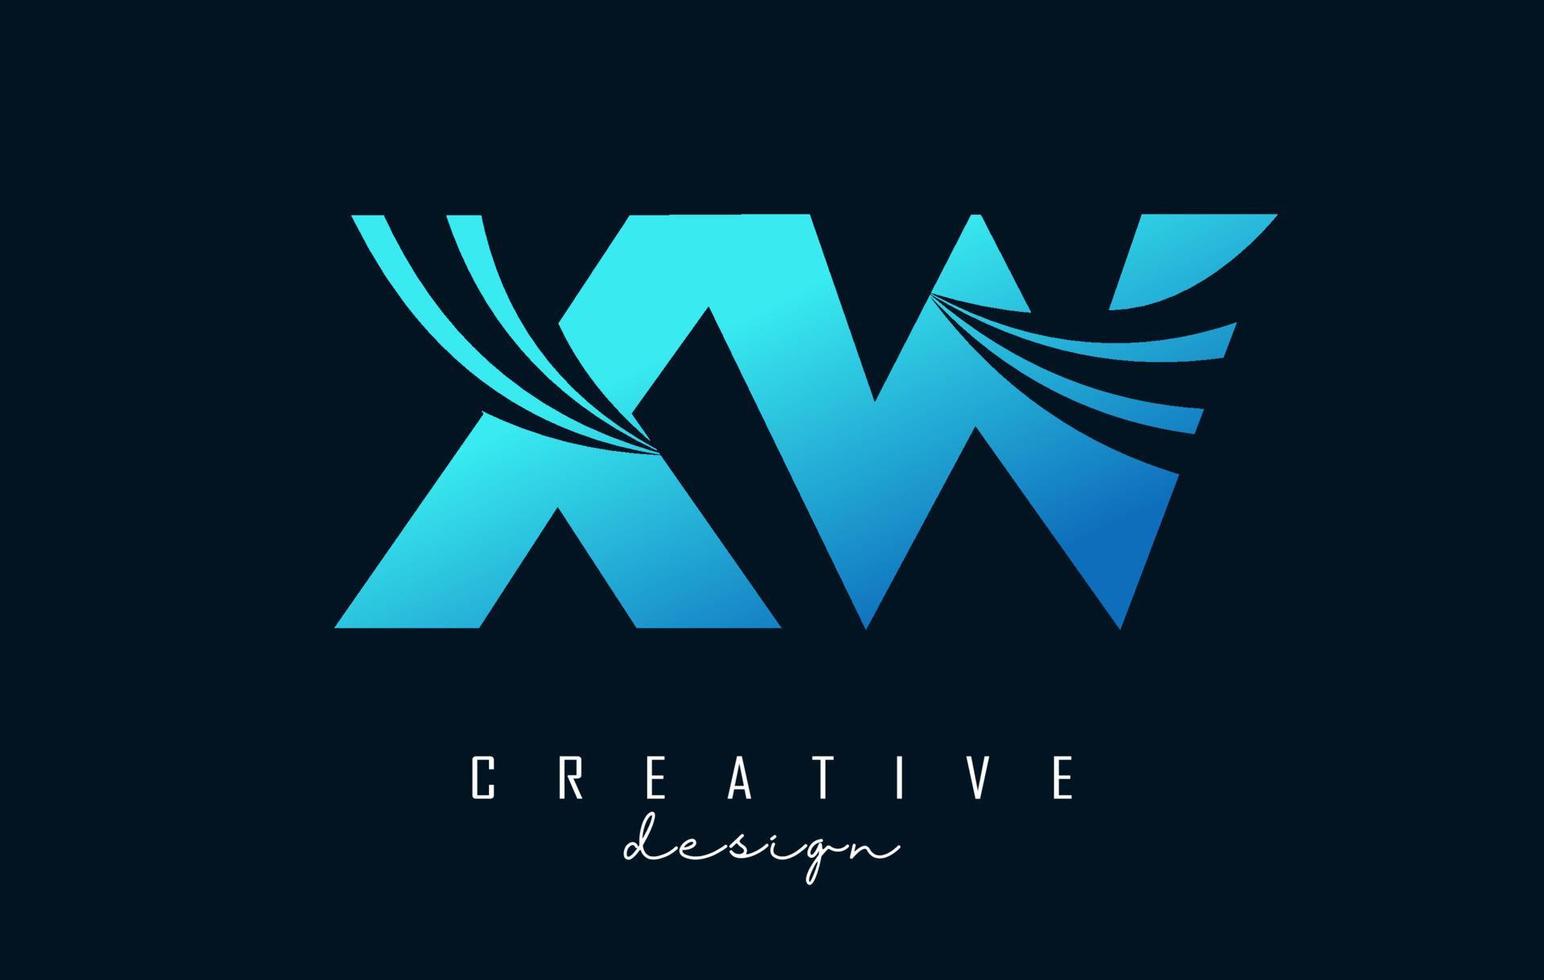 kreative blaue buchstaben xw xw logo mit führenden linien und straßenkonzeptdesign. Buchstaben mit geometrischem Design. vektor